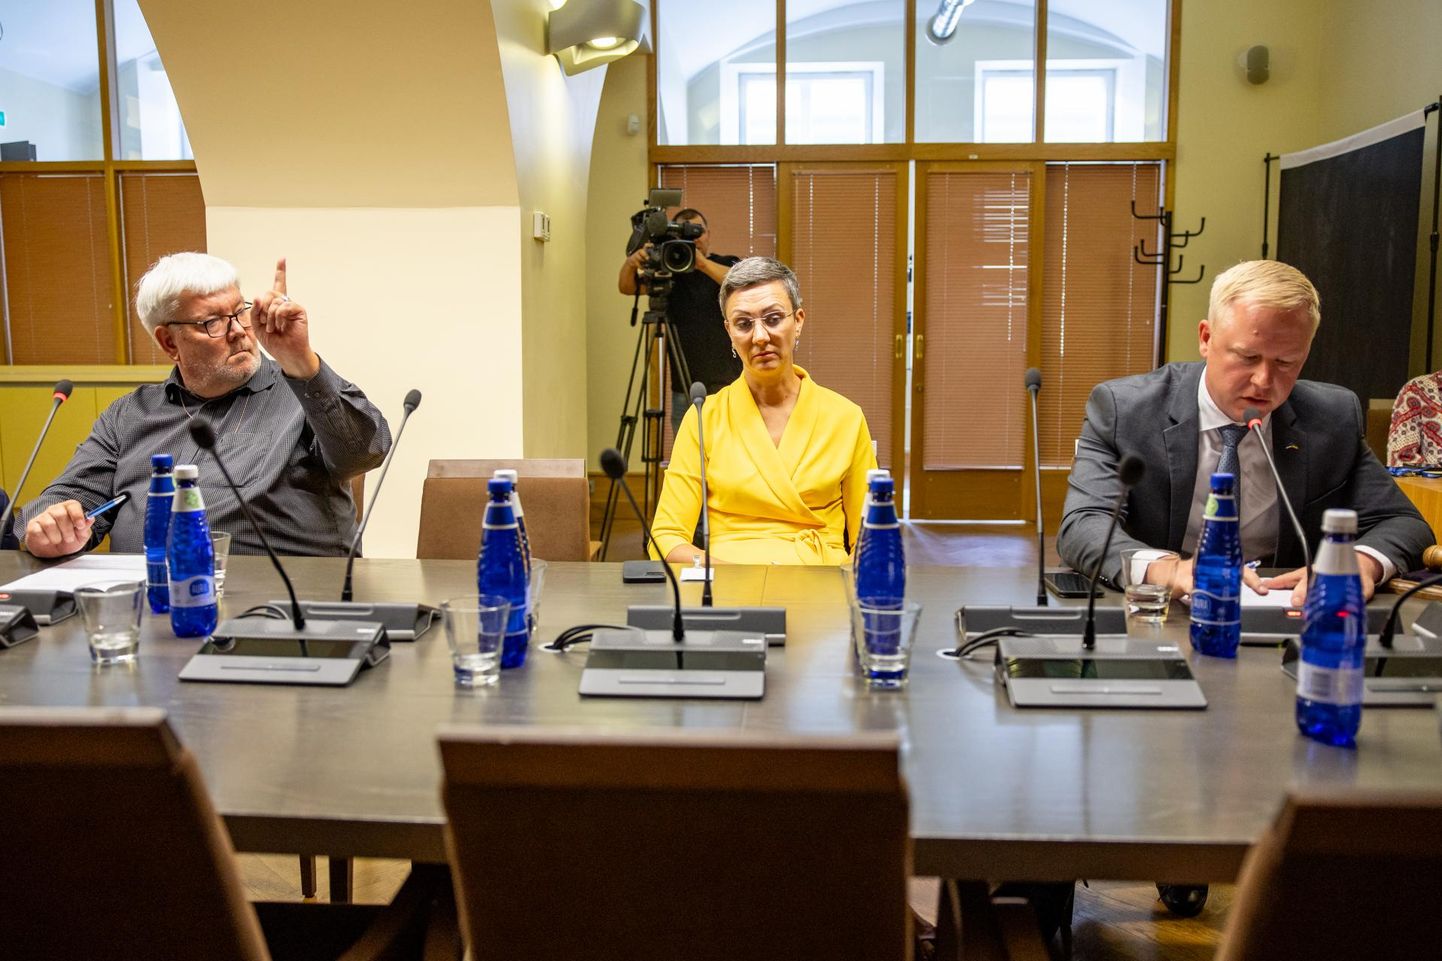 «Minu vestlused Toomas Sildamiga (vasakul) ei ole midagi humoorikat ega naljakat.» Rahandusminister Mart Võrklaev on veendunud, et mingit möödarääkimist ei ole olnud, vaid kõik on olnud üheselt mõistetav.